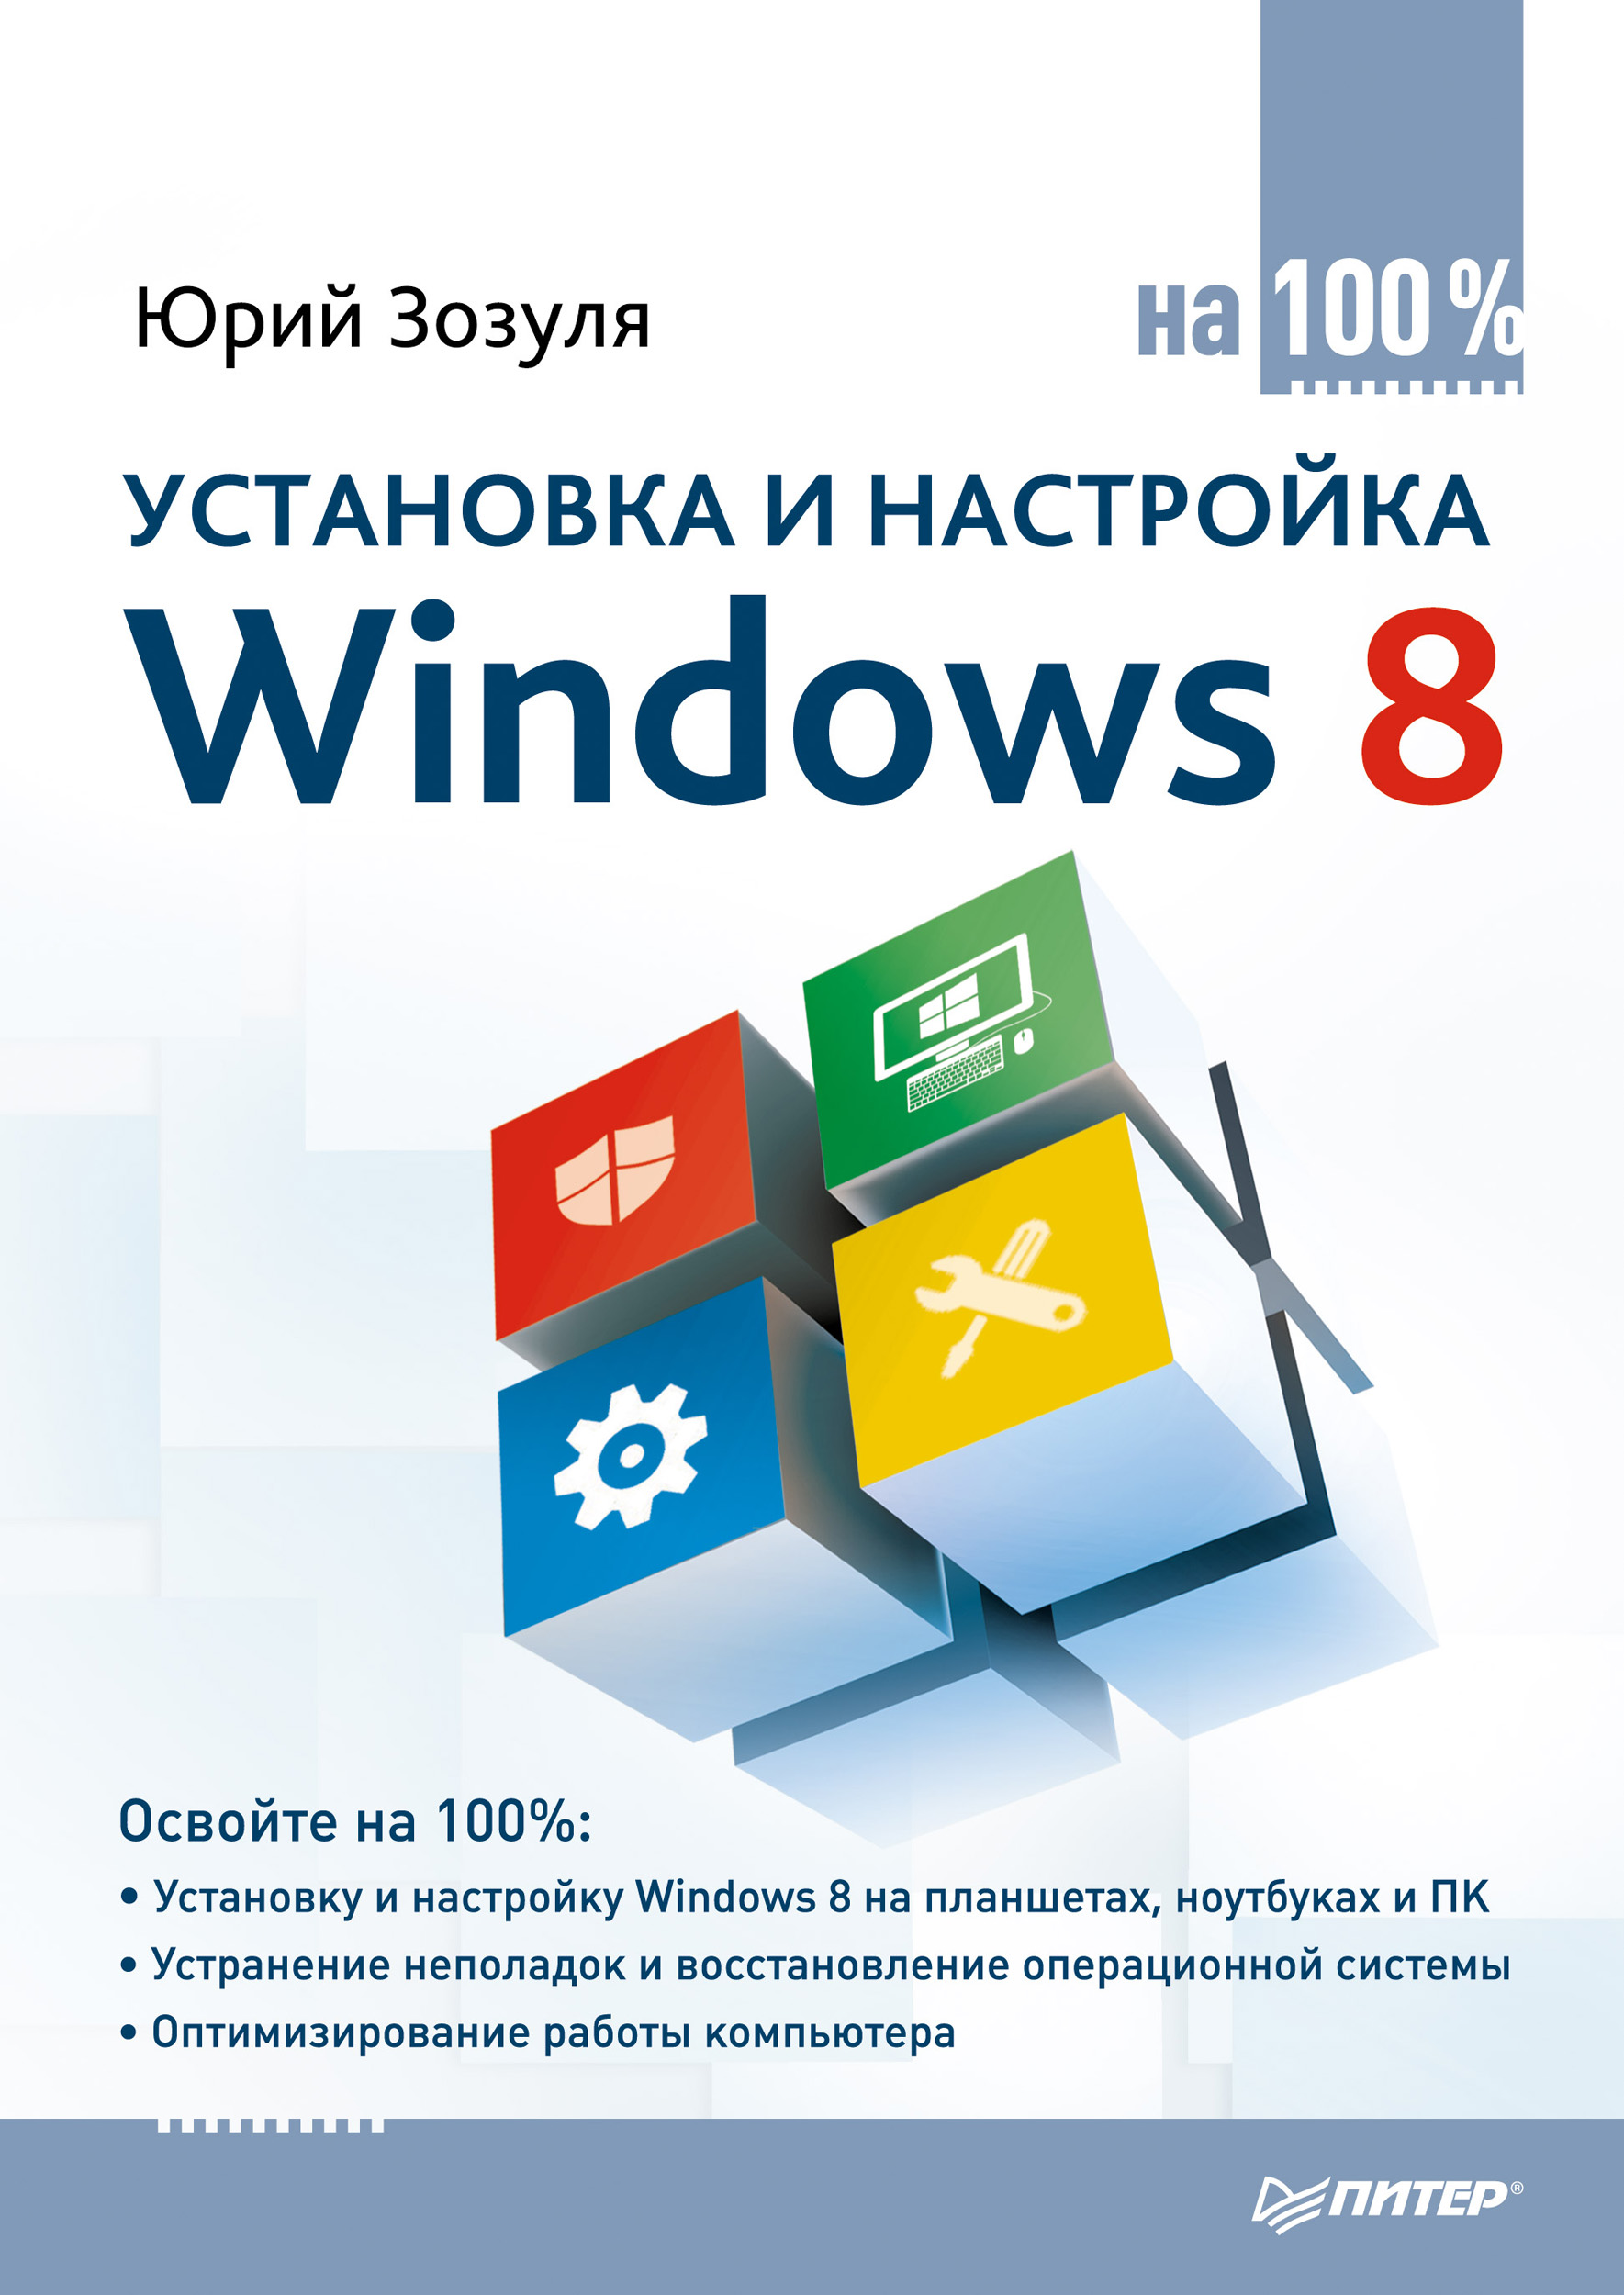 Книга На 100% (Питер) Установка и настройка Windows 8 на 100% созданная Юрий Зозуля может относится к жанру ОС и сети, программы. Стоимость электронной книги Установка и настройка Windows 8 на 100% с идентификатором 6060270 составляет 319.00 руб.